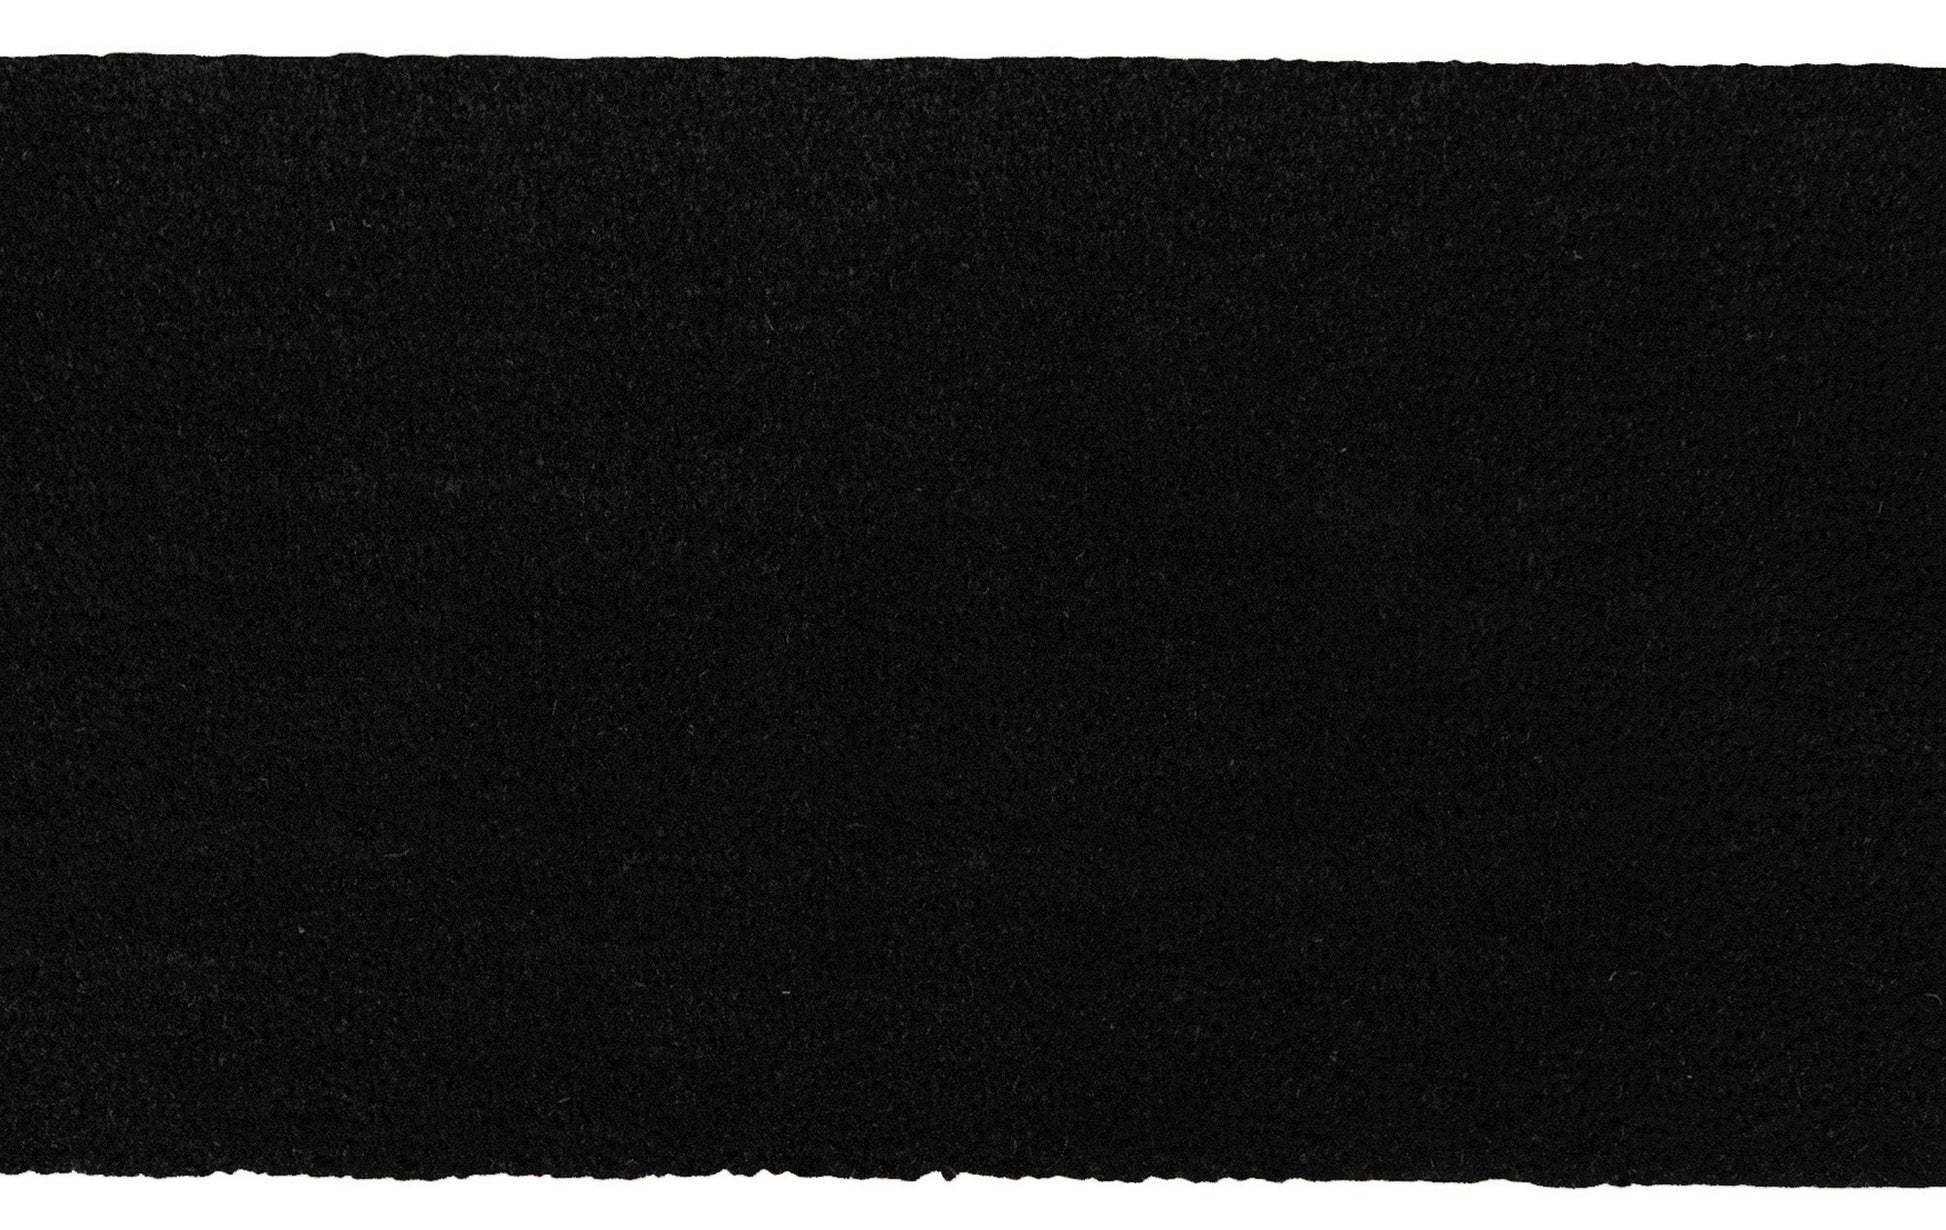 Theodore Magnus Natural Coir Doormat with non-slip backing - 17 x 30 - Outdoor / Indoor - Black